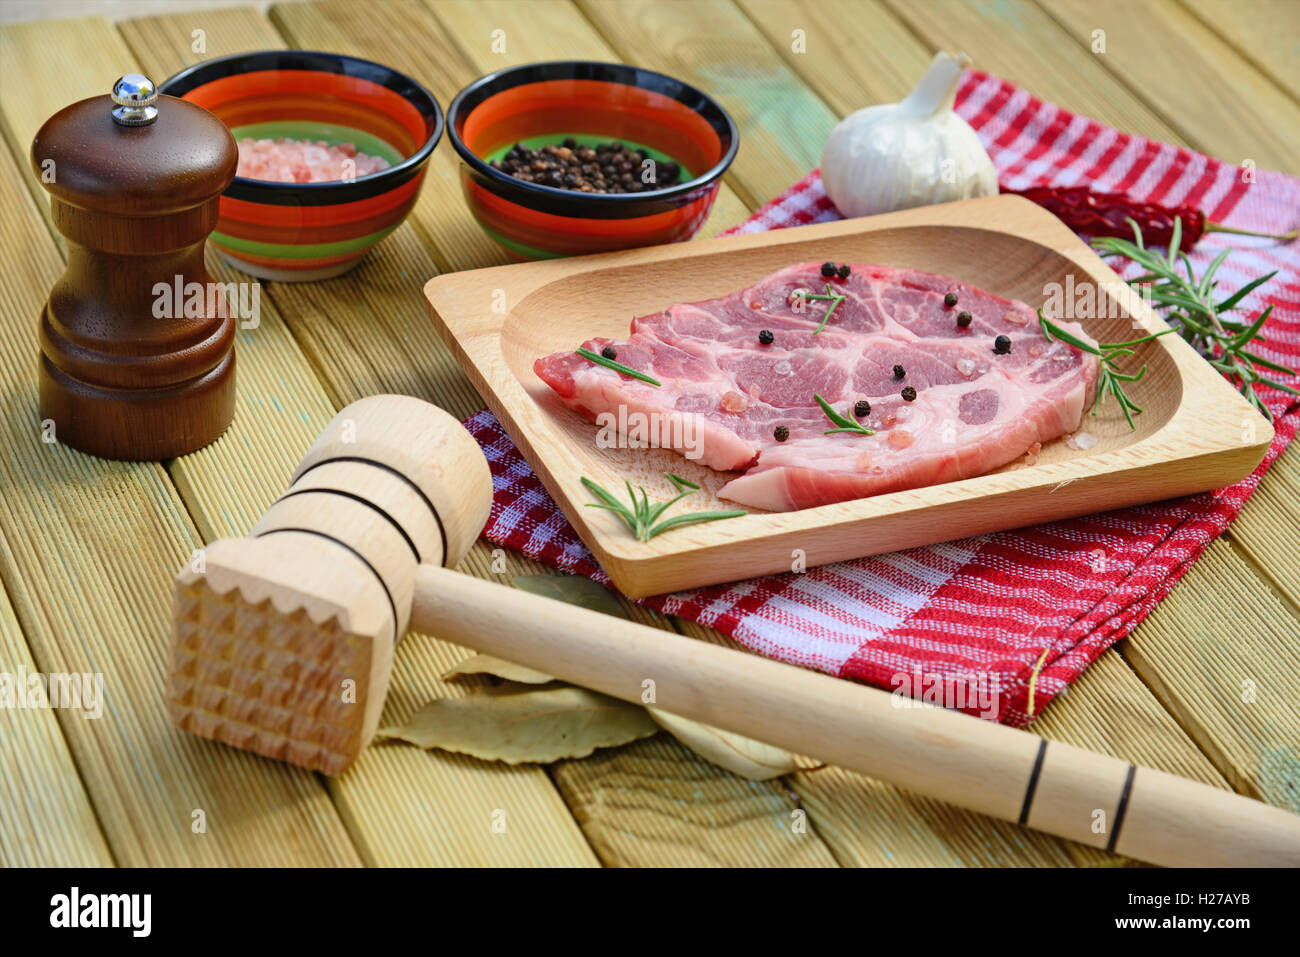 La viande de porc cru sur plaque de bois, moulin à poivre, romarin, épices et un marteau sur fond de bois Banque D'Images